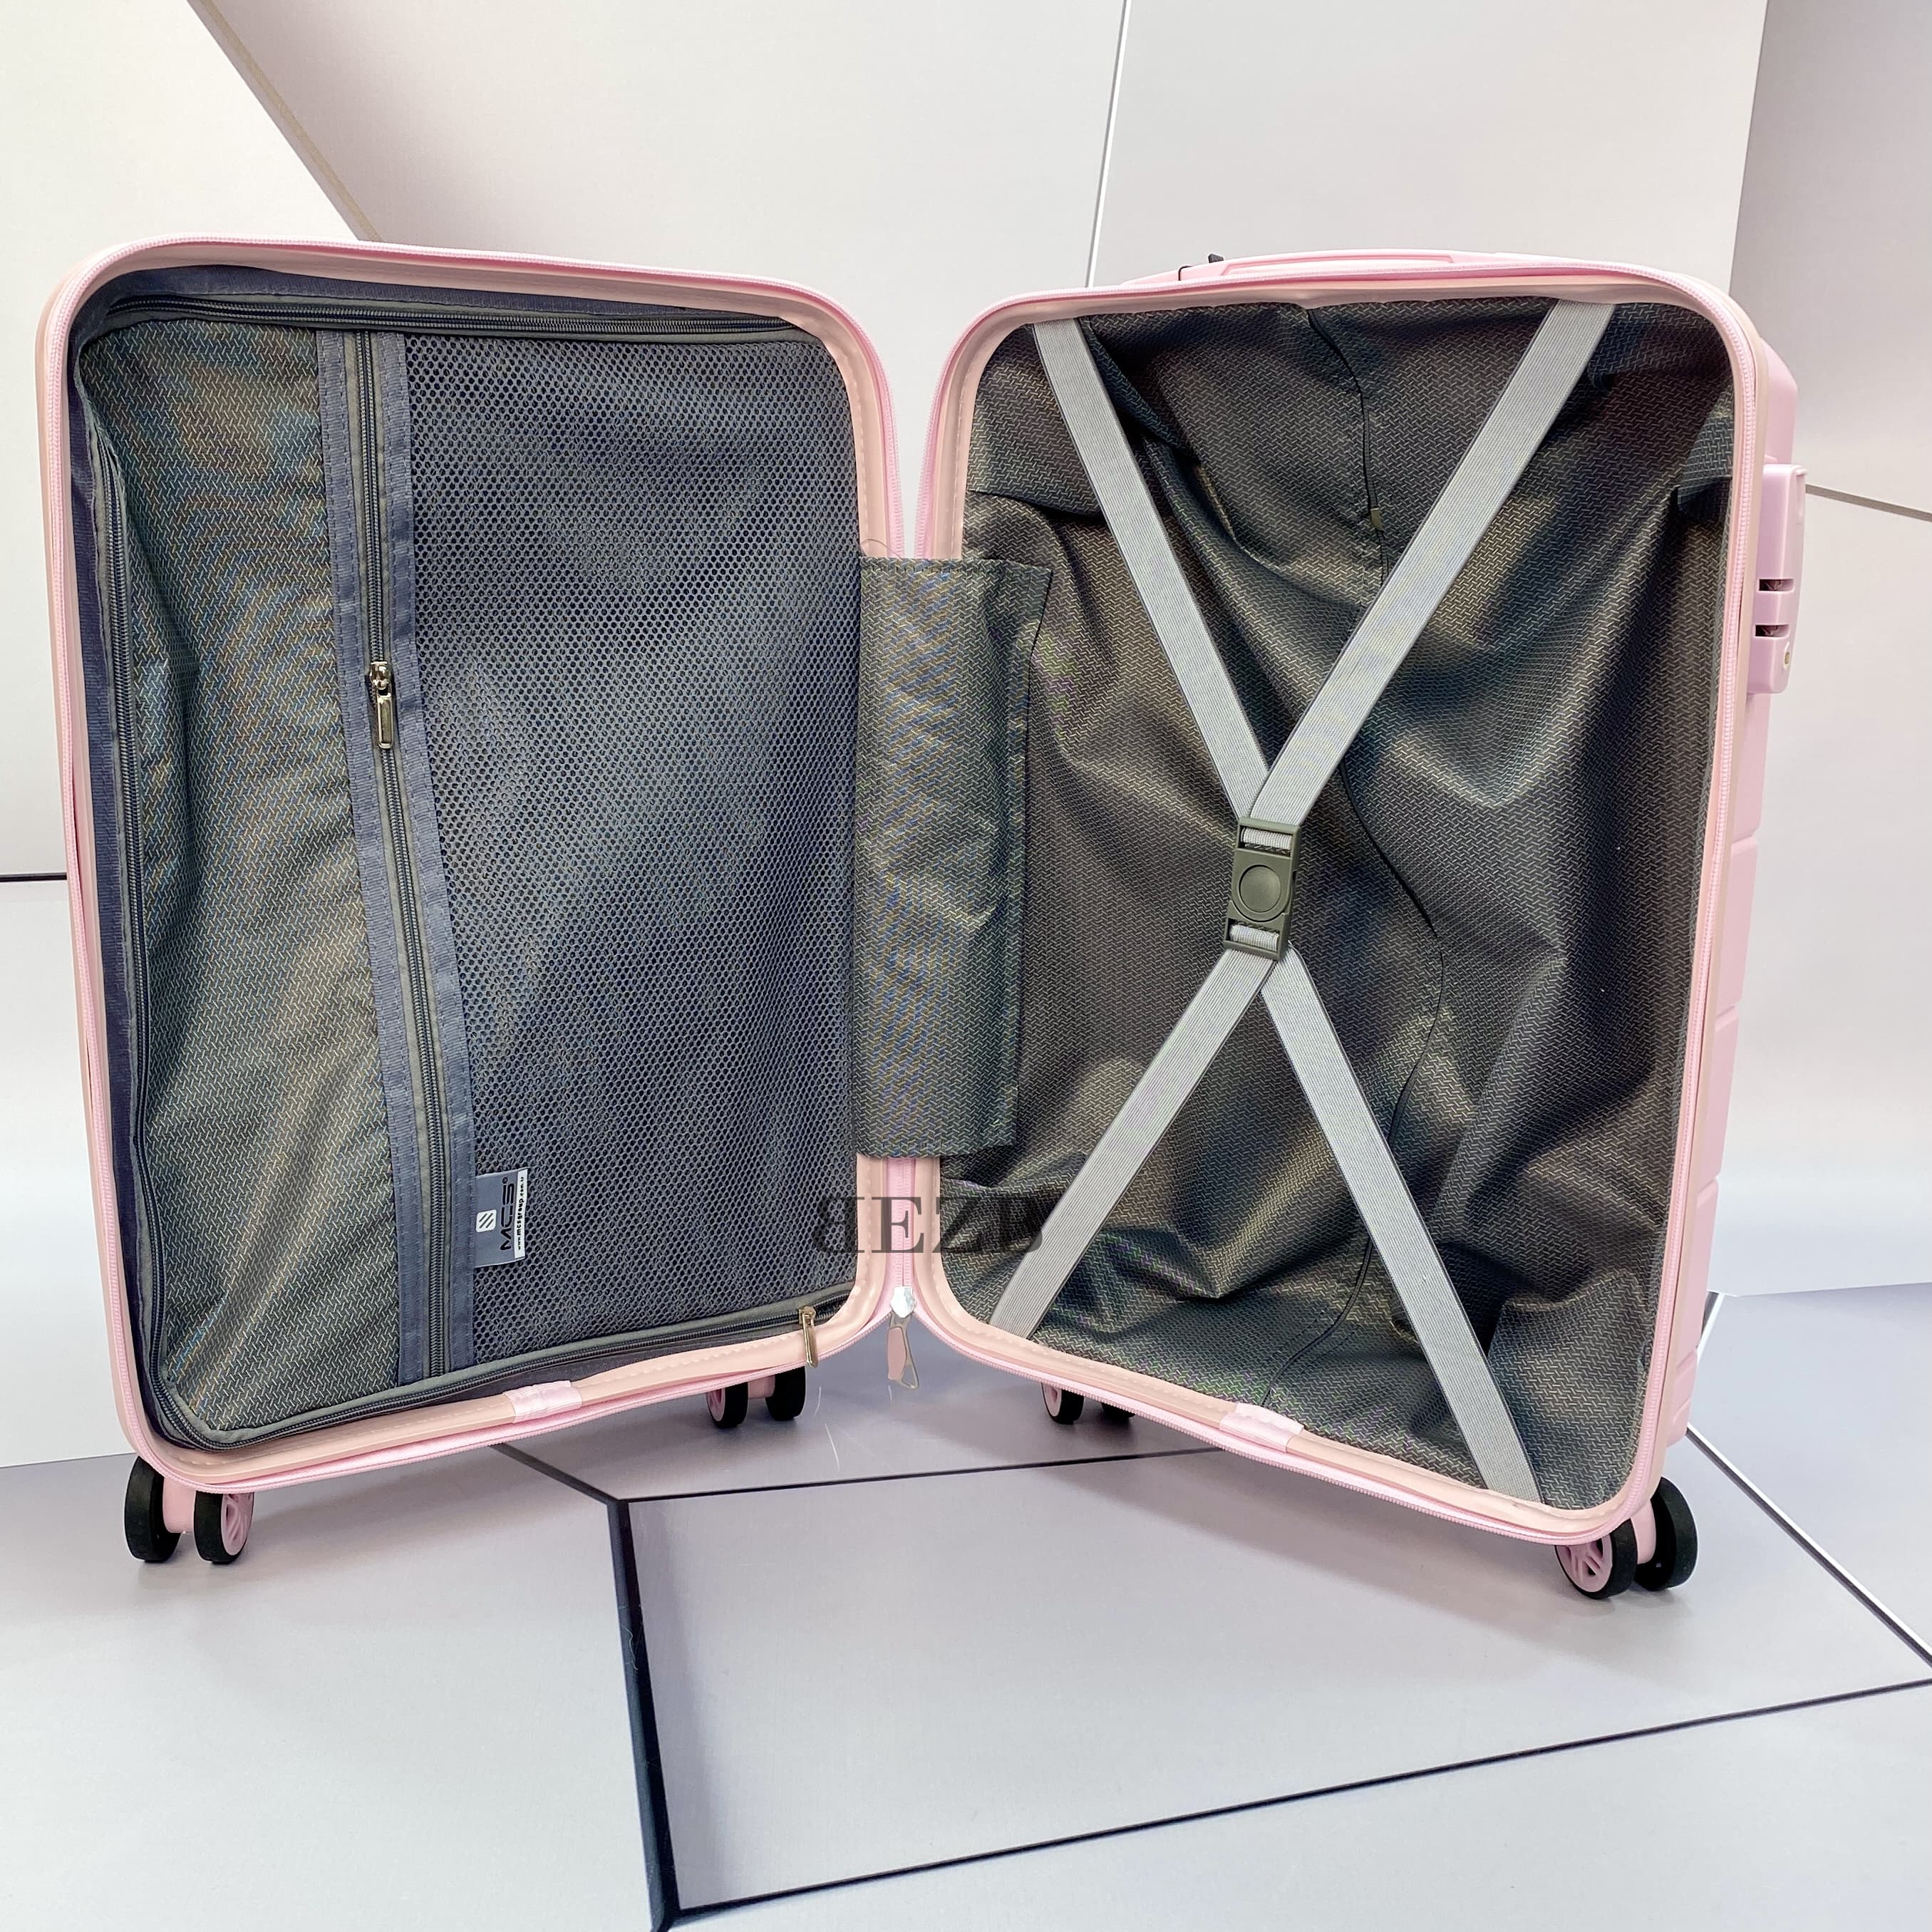 Маленький чемодан для ручьной клади из полипропилена MCS V366 S POWDER! Для 8-10 кг! - 4